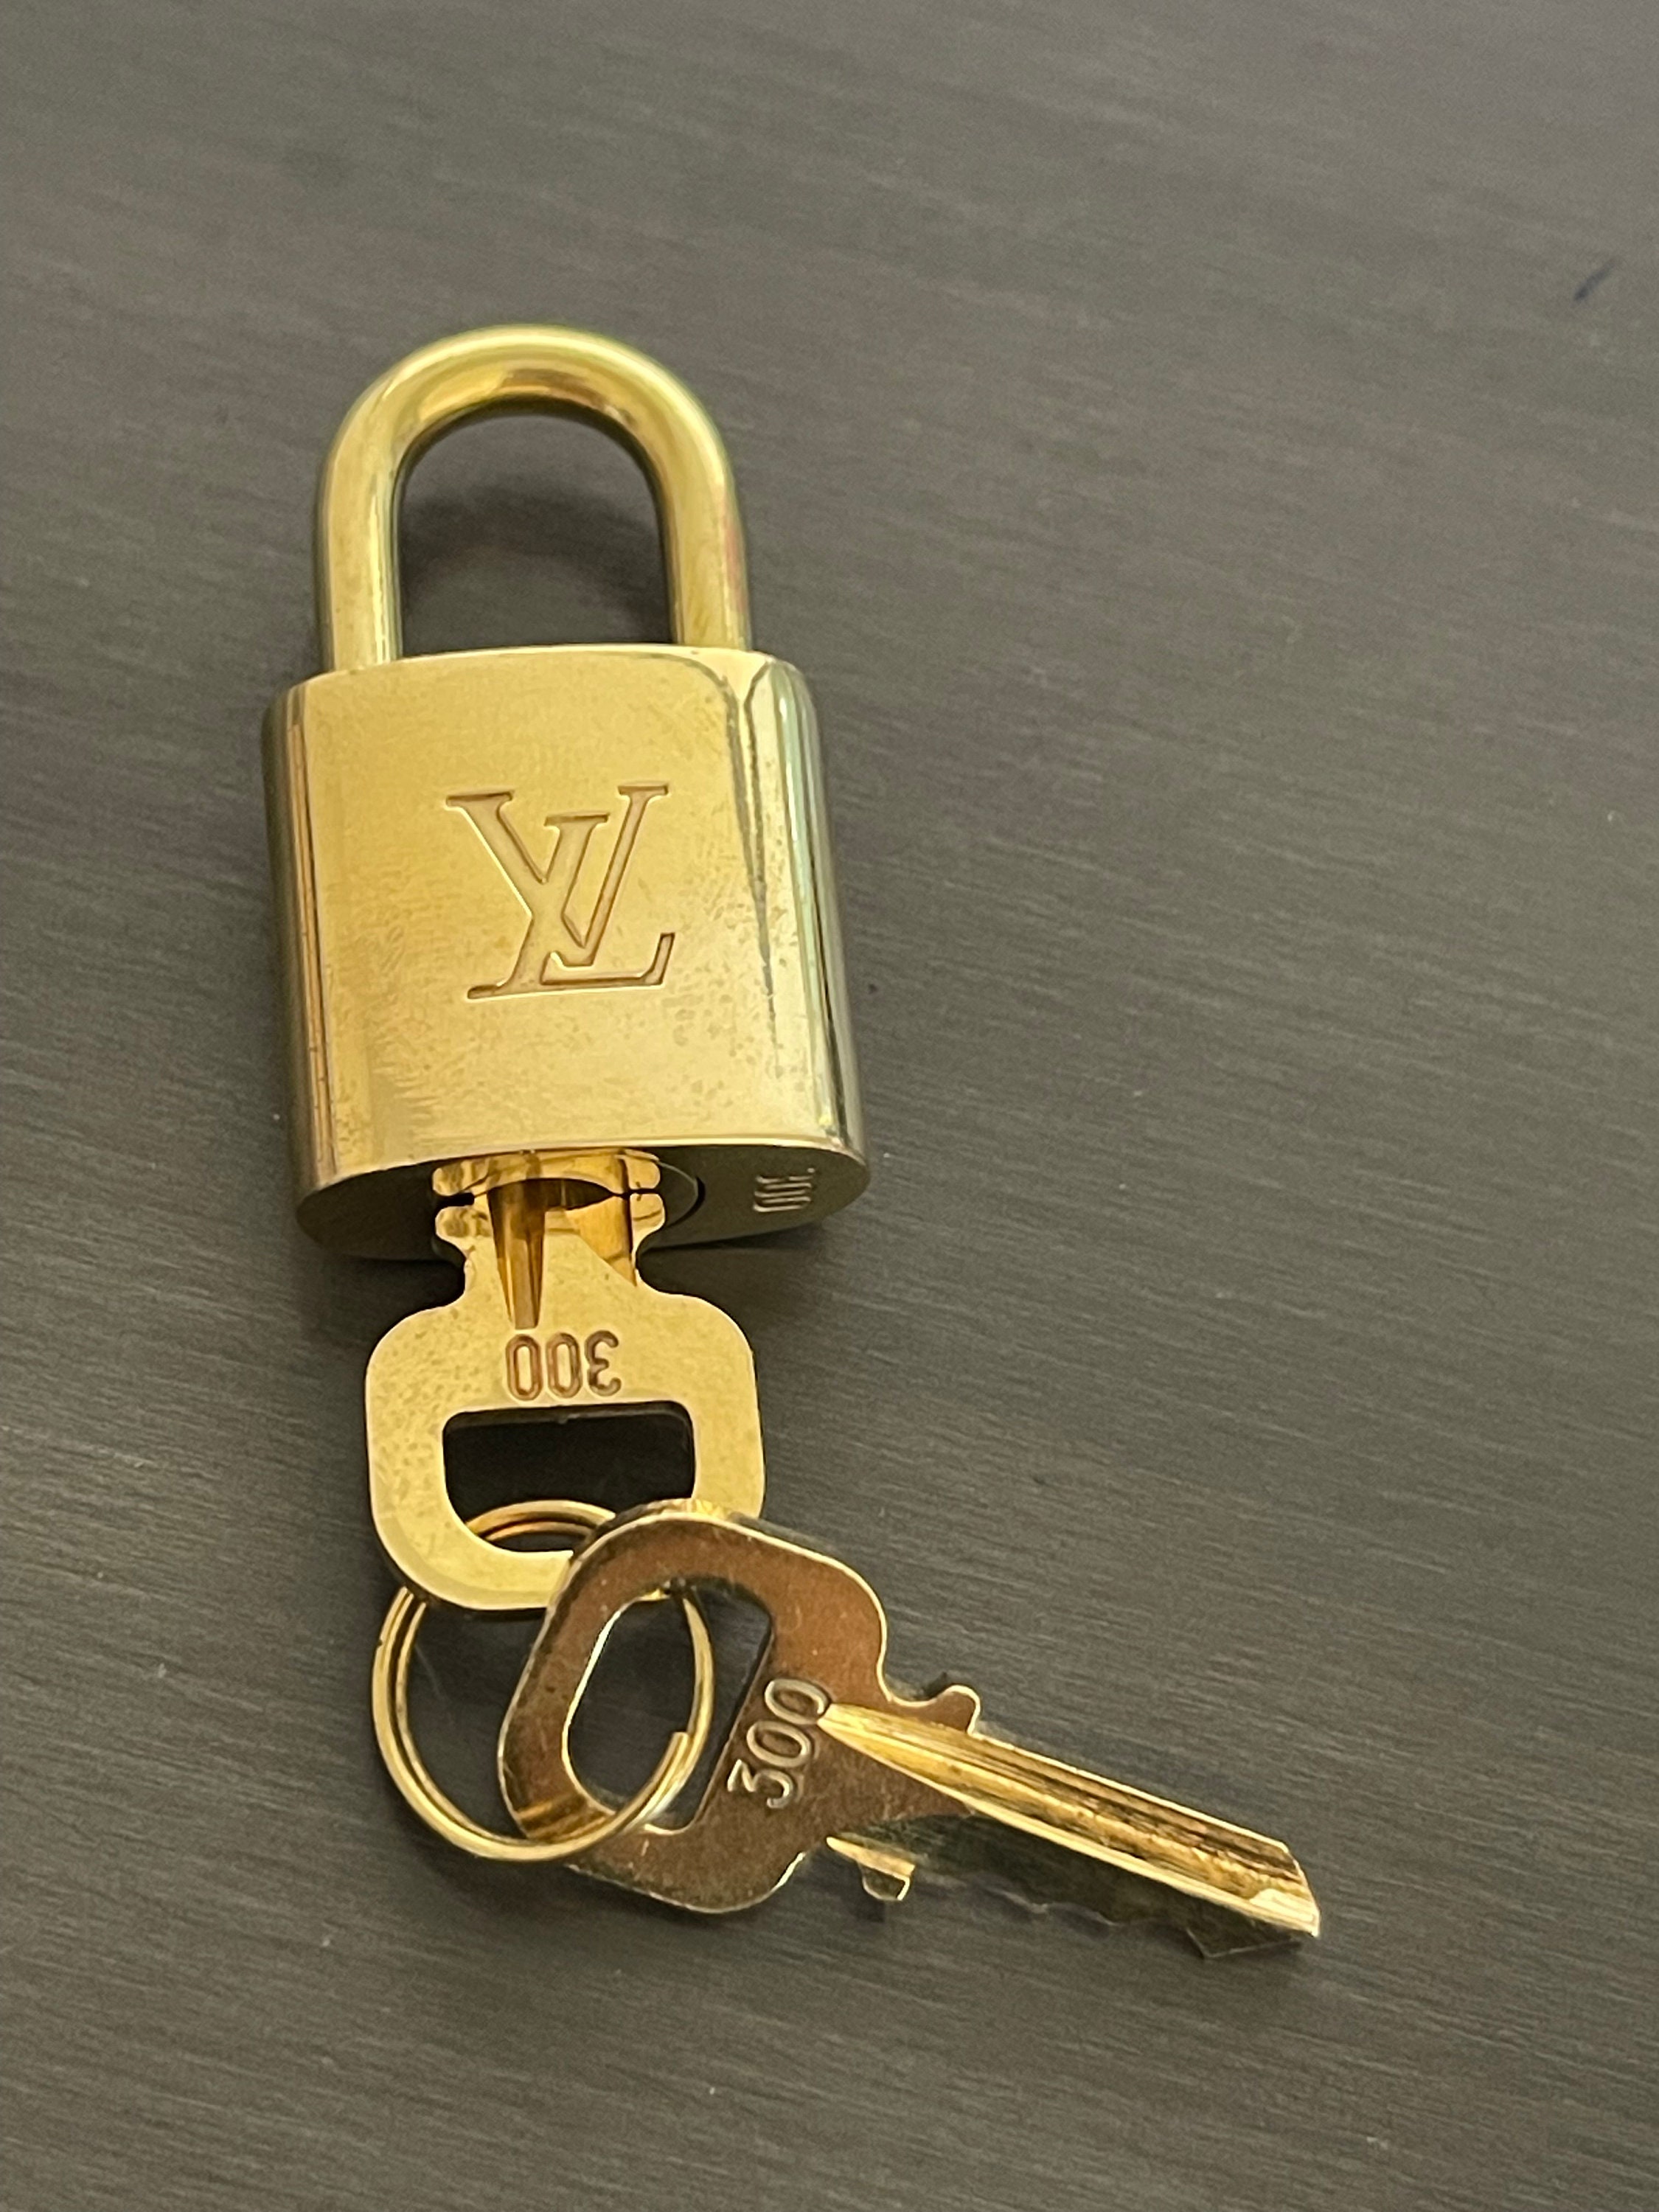 LV lock necklace #323 (no key)